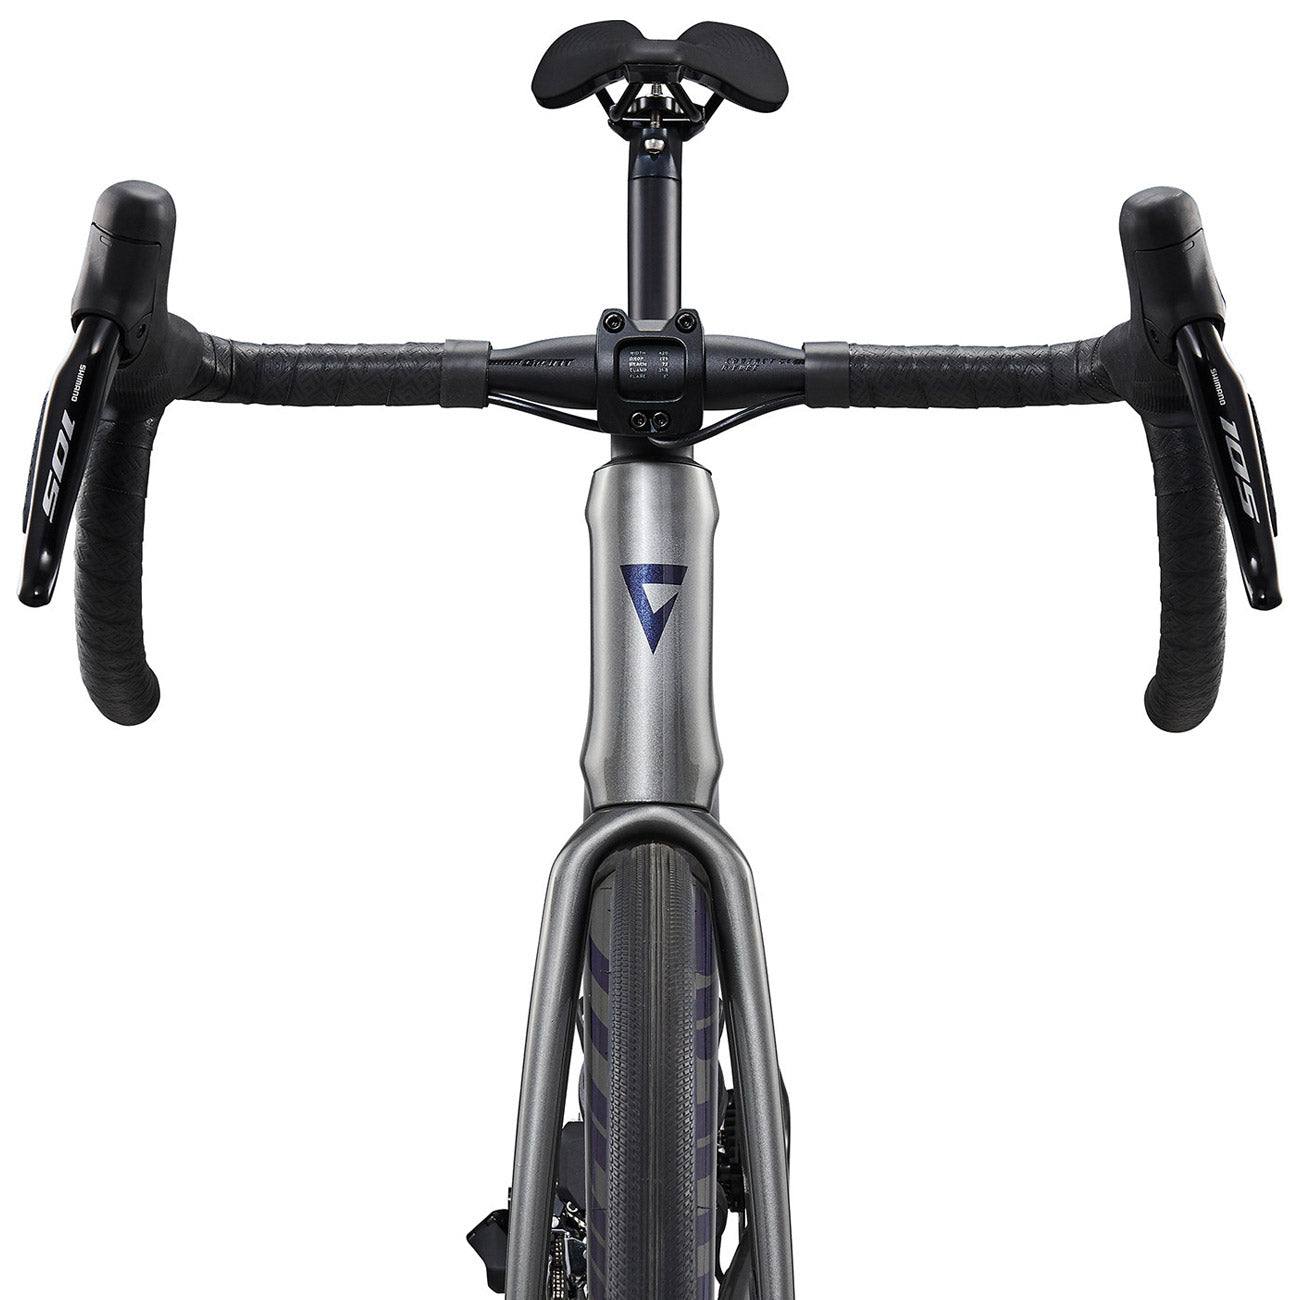 giant defy advanced dettaglio profilo anteriore bici